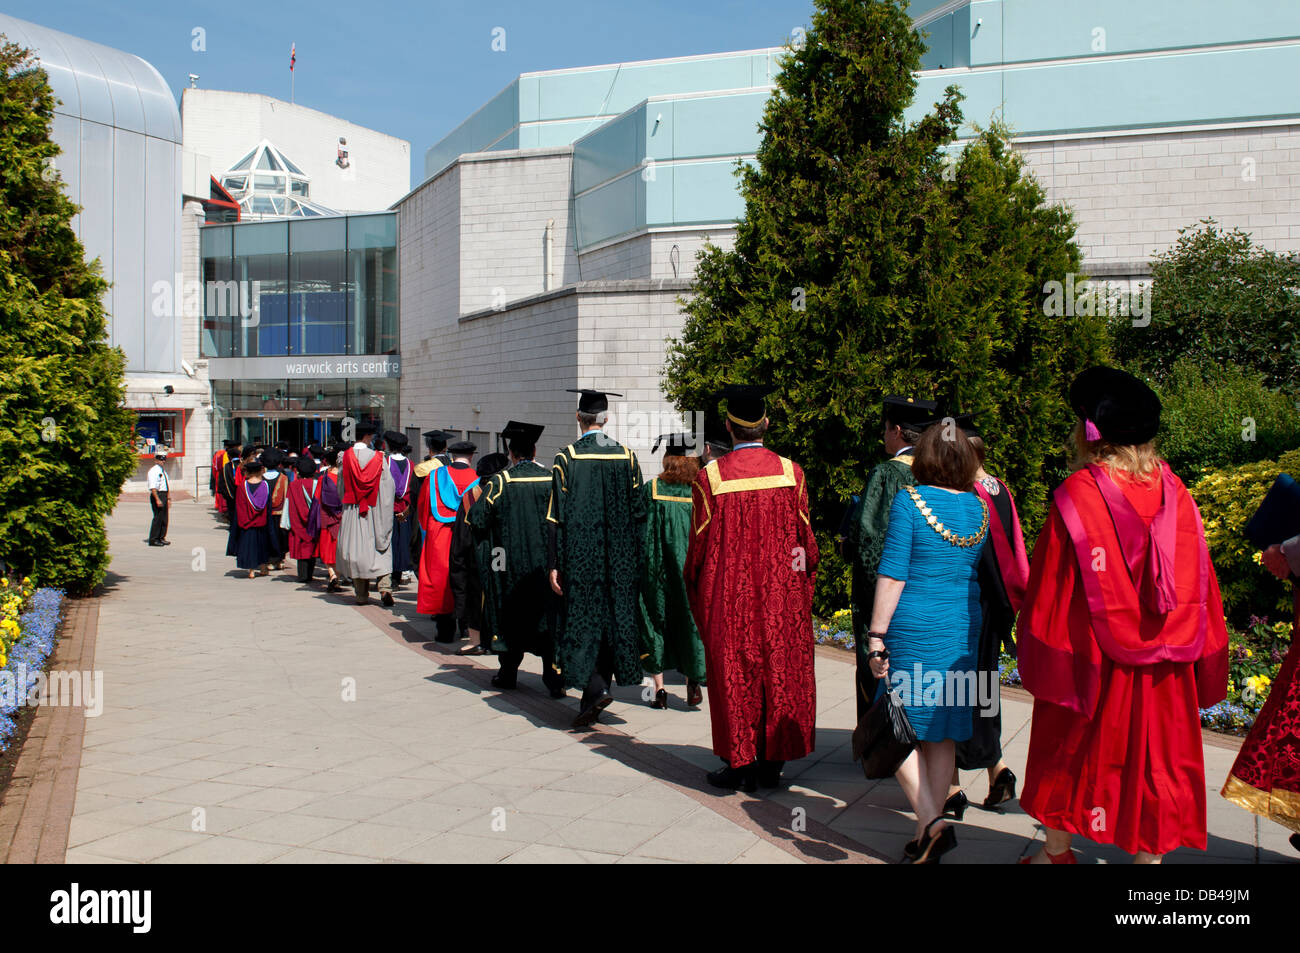 Procession le jour de la remise des diplômes universitaires, Université de Warwick, Royaume-Uni Banque D'Images